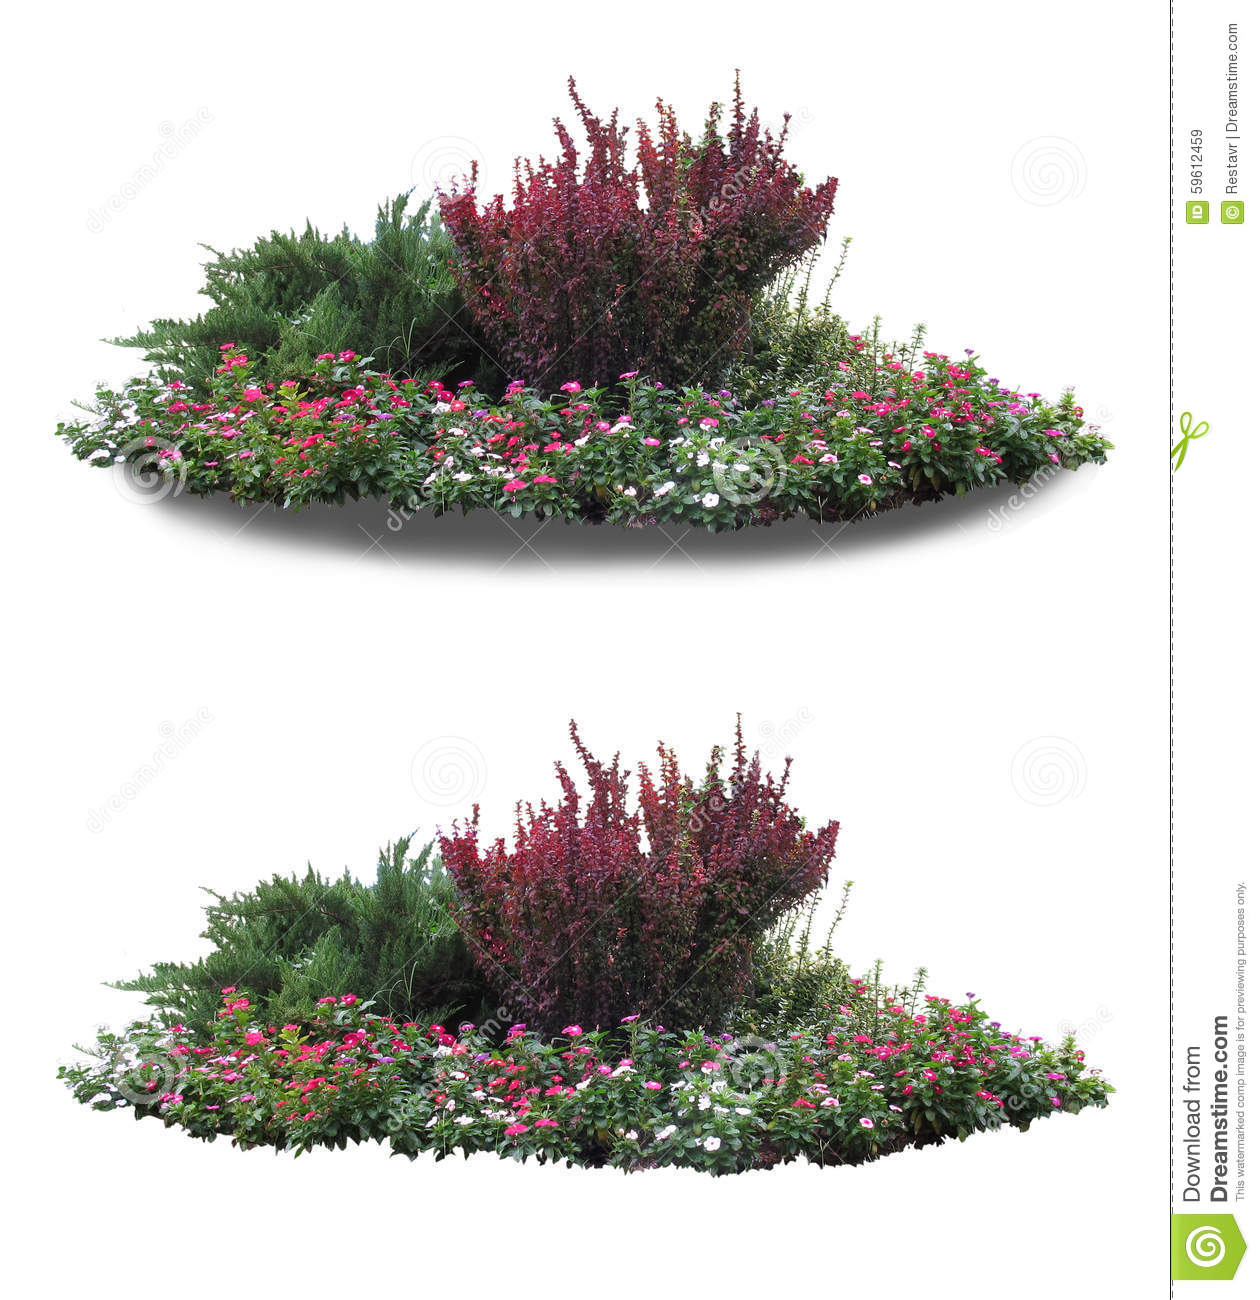 Flower Garden stock image. Image of design, beauty.